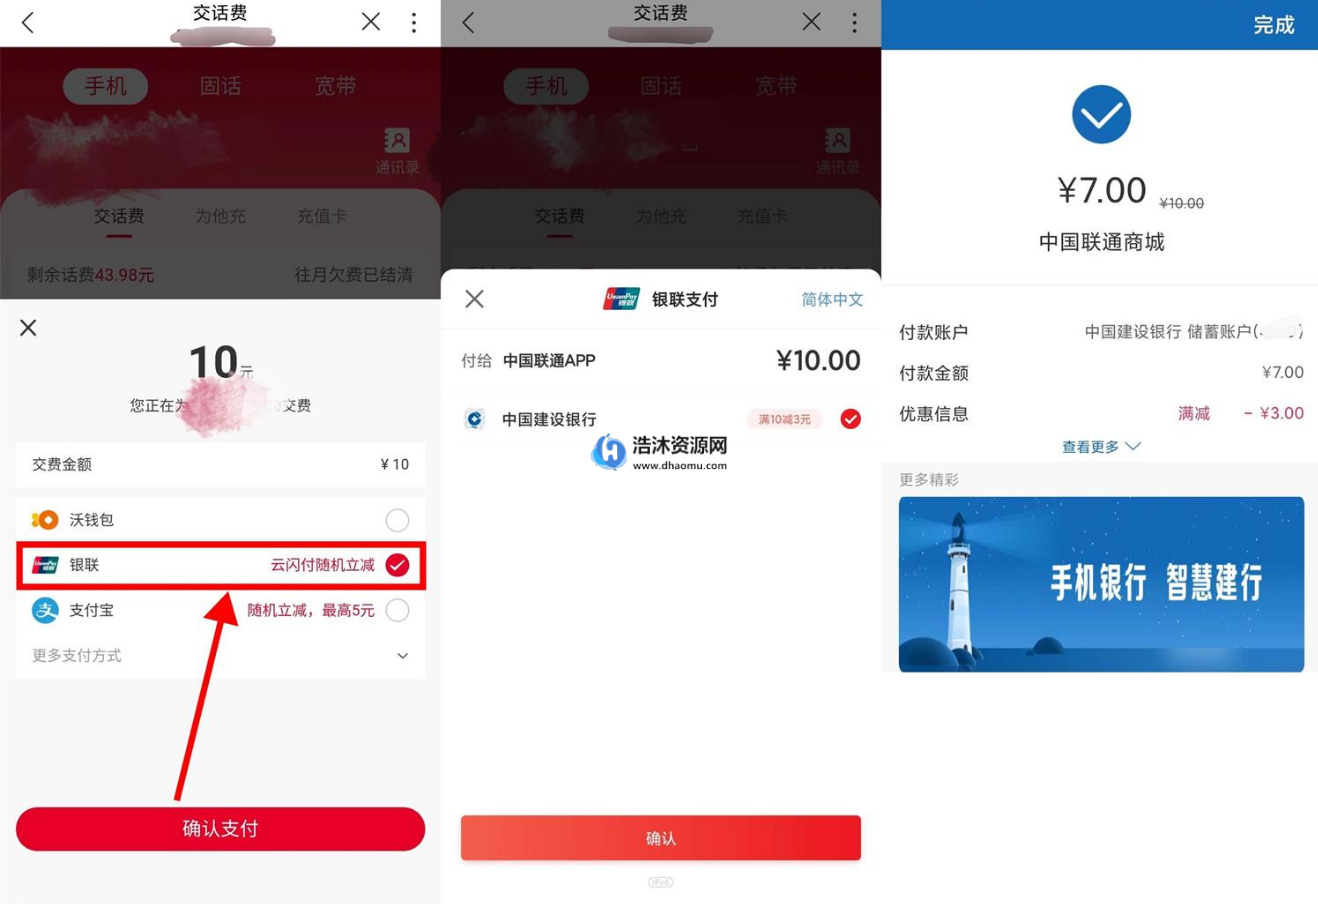 中国联通用户银联支付7元充值10元话费